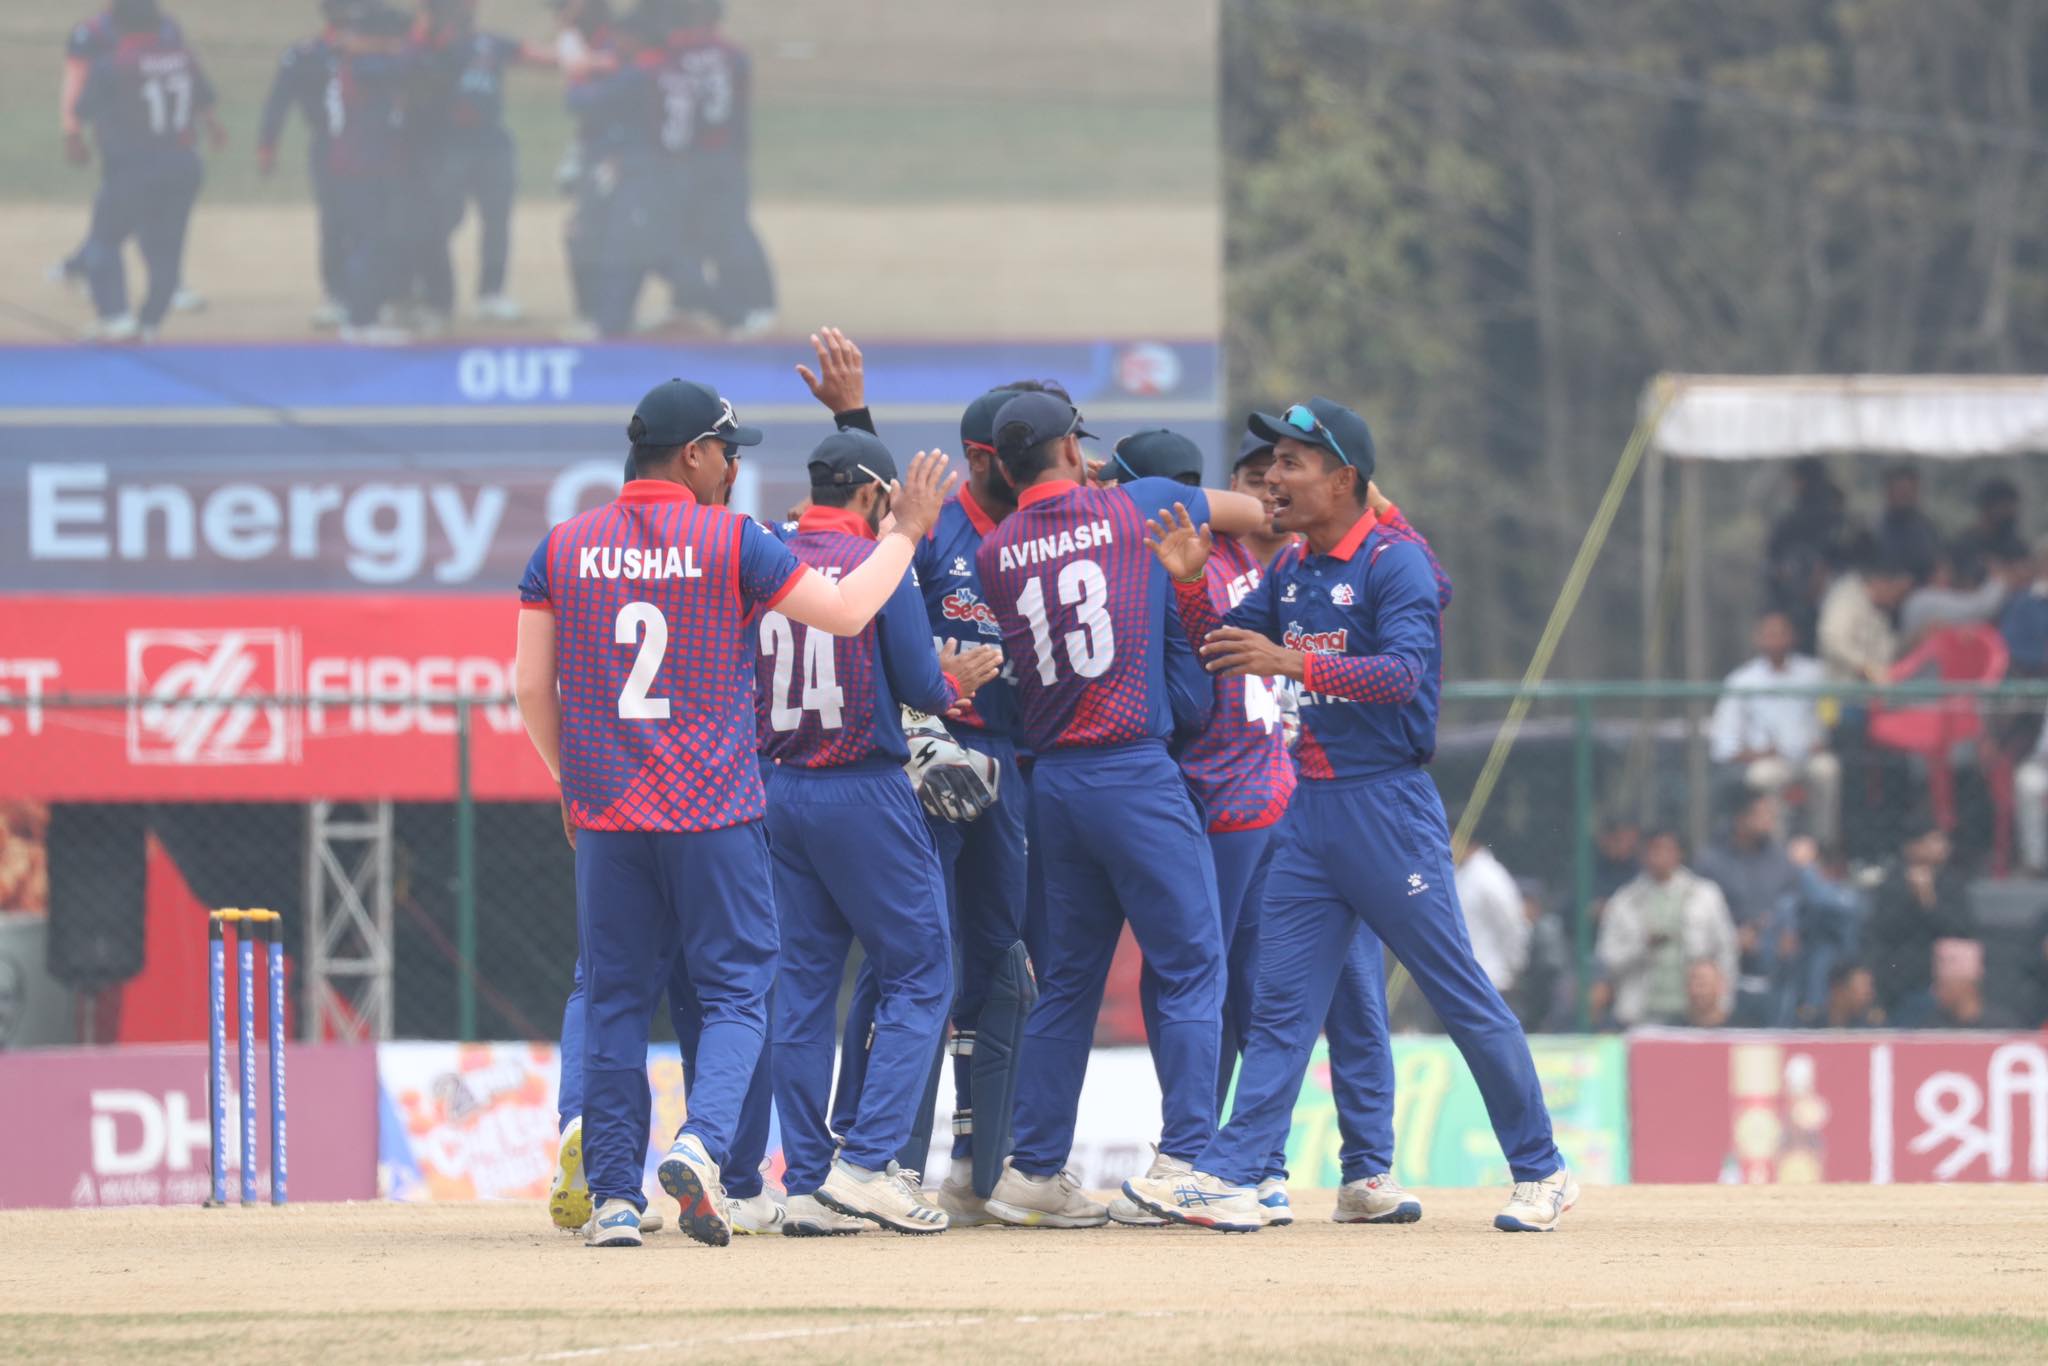 नेपाललाई छैटौं सफलता, करण, प्रतिश र कुशलले लिए २/२ विकेट